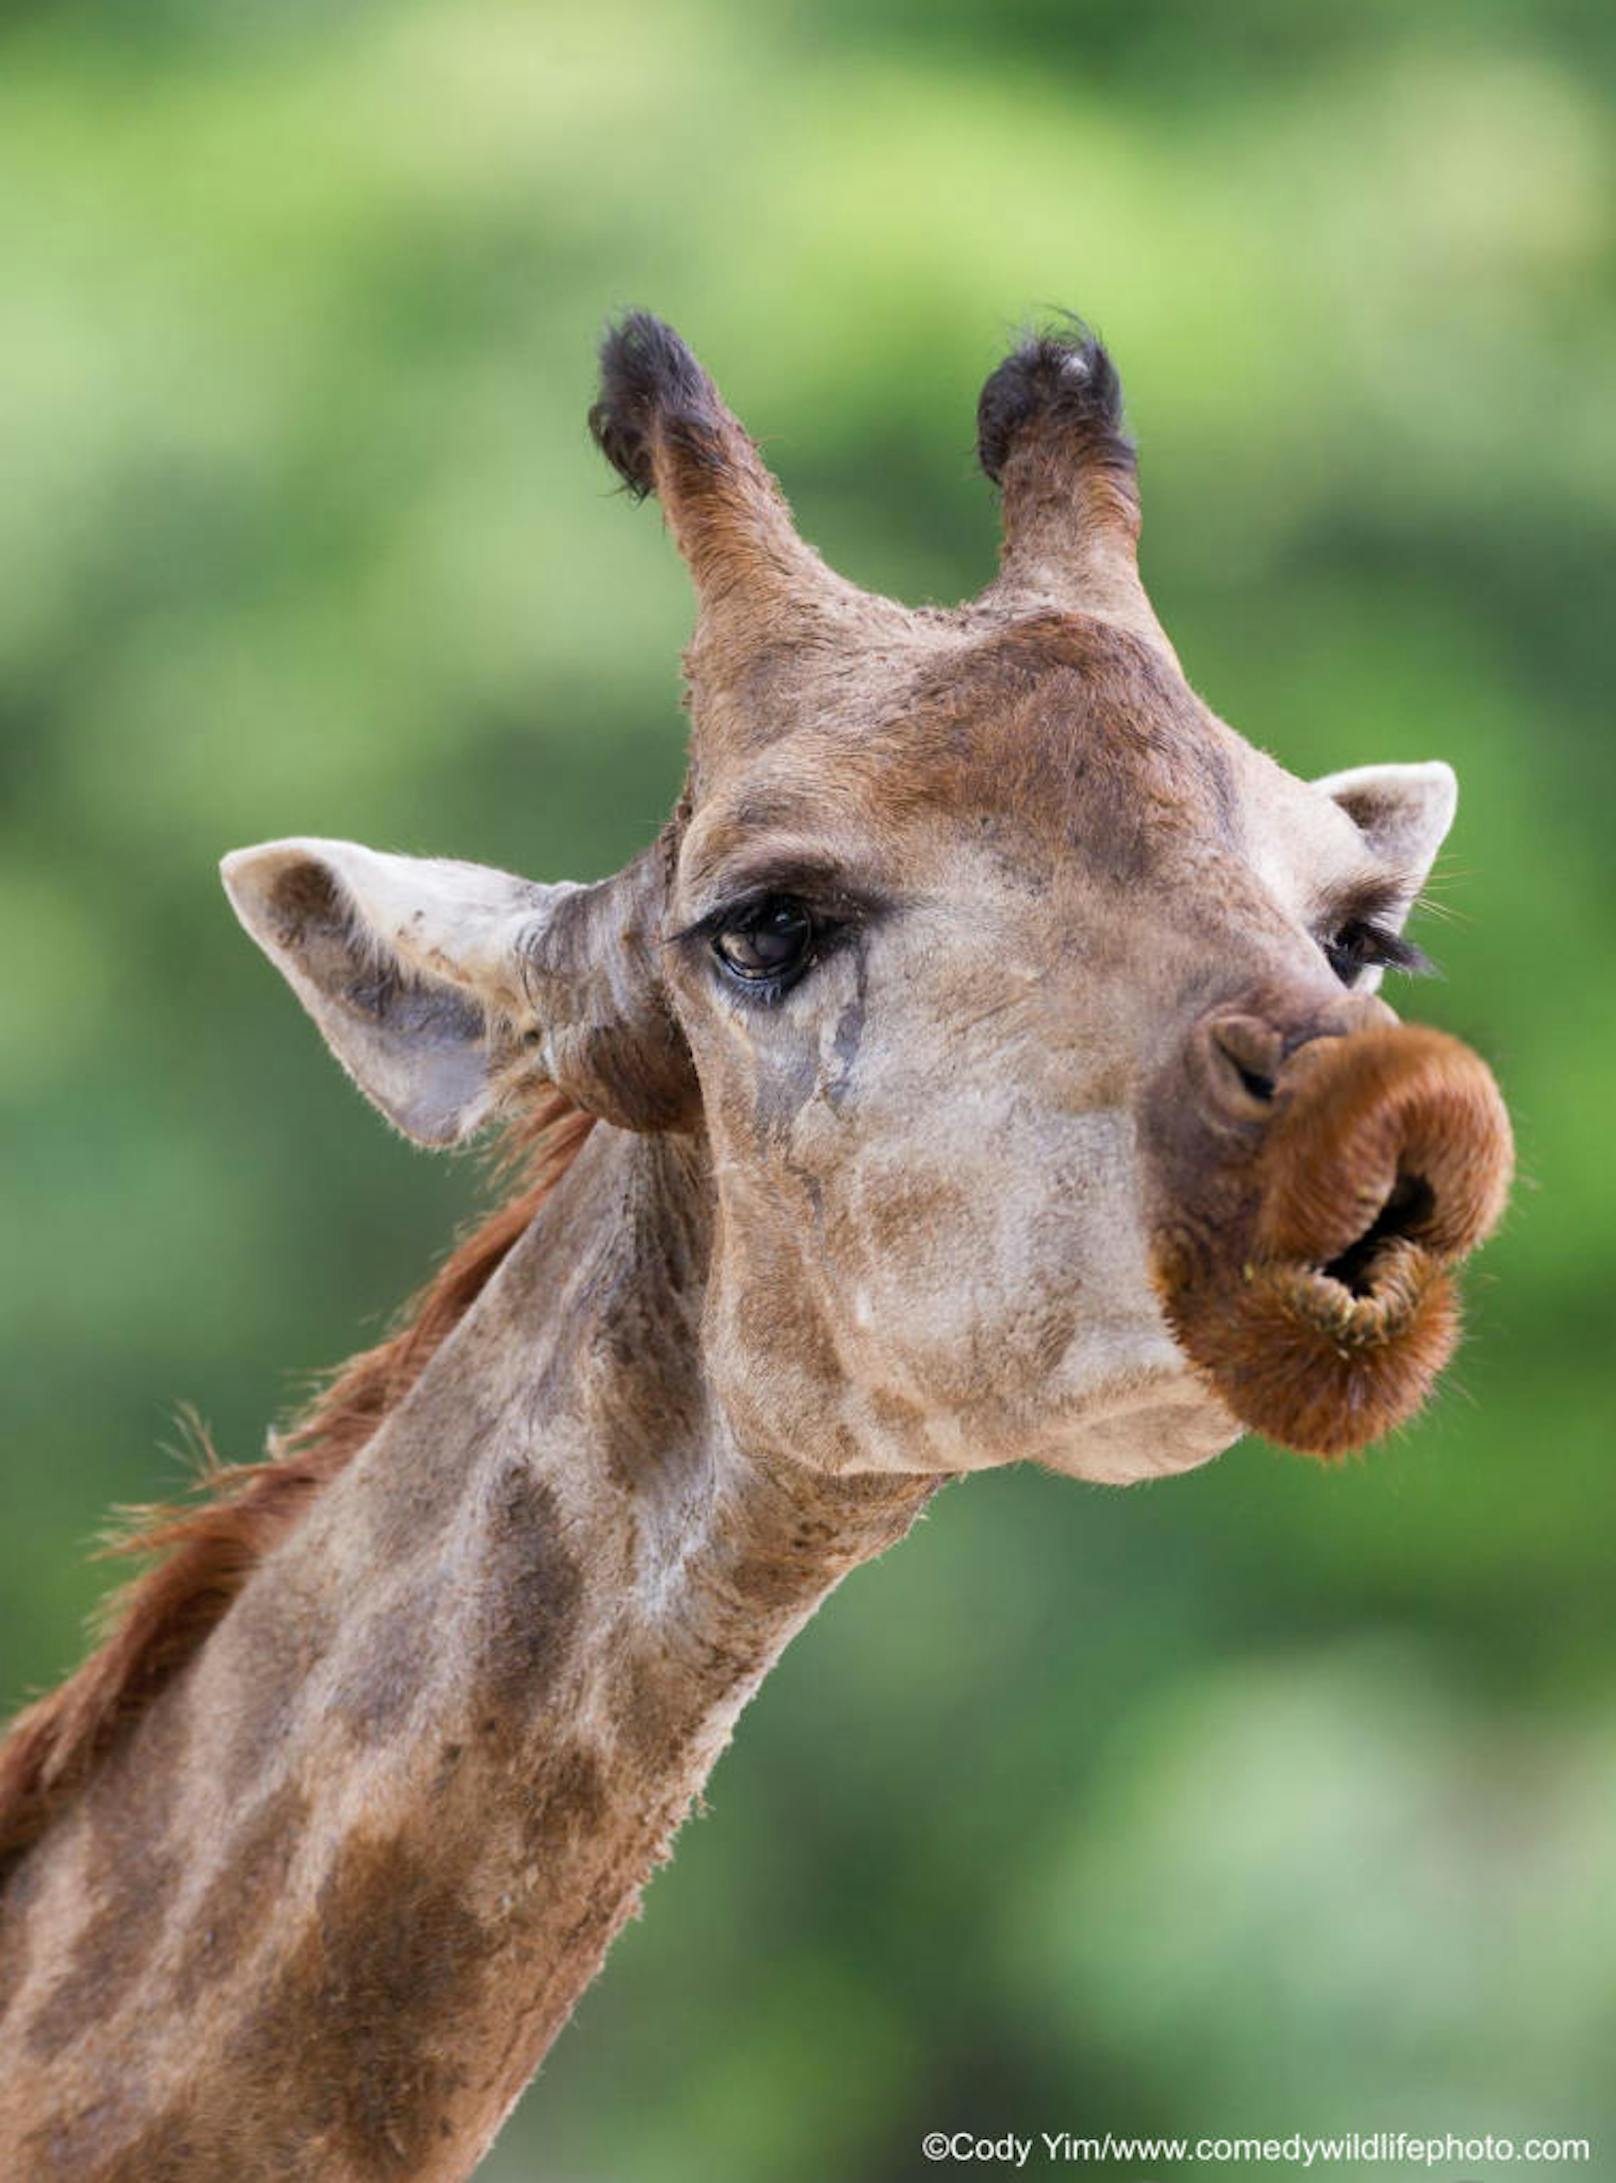 <b>Giraffe macht  Kussmund</b>

"Give you a kiss" von Yee Cheung Cody Yim
Ort: China